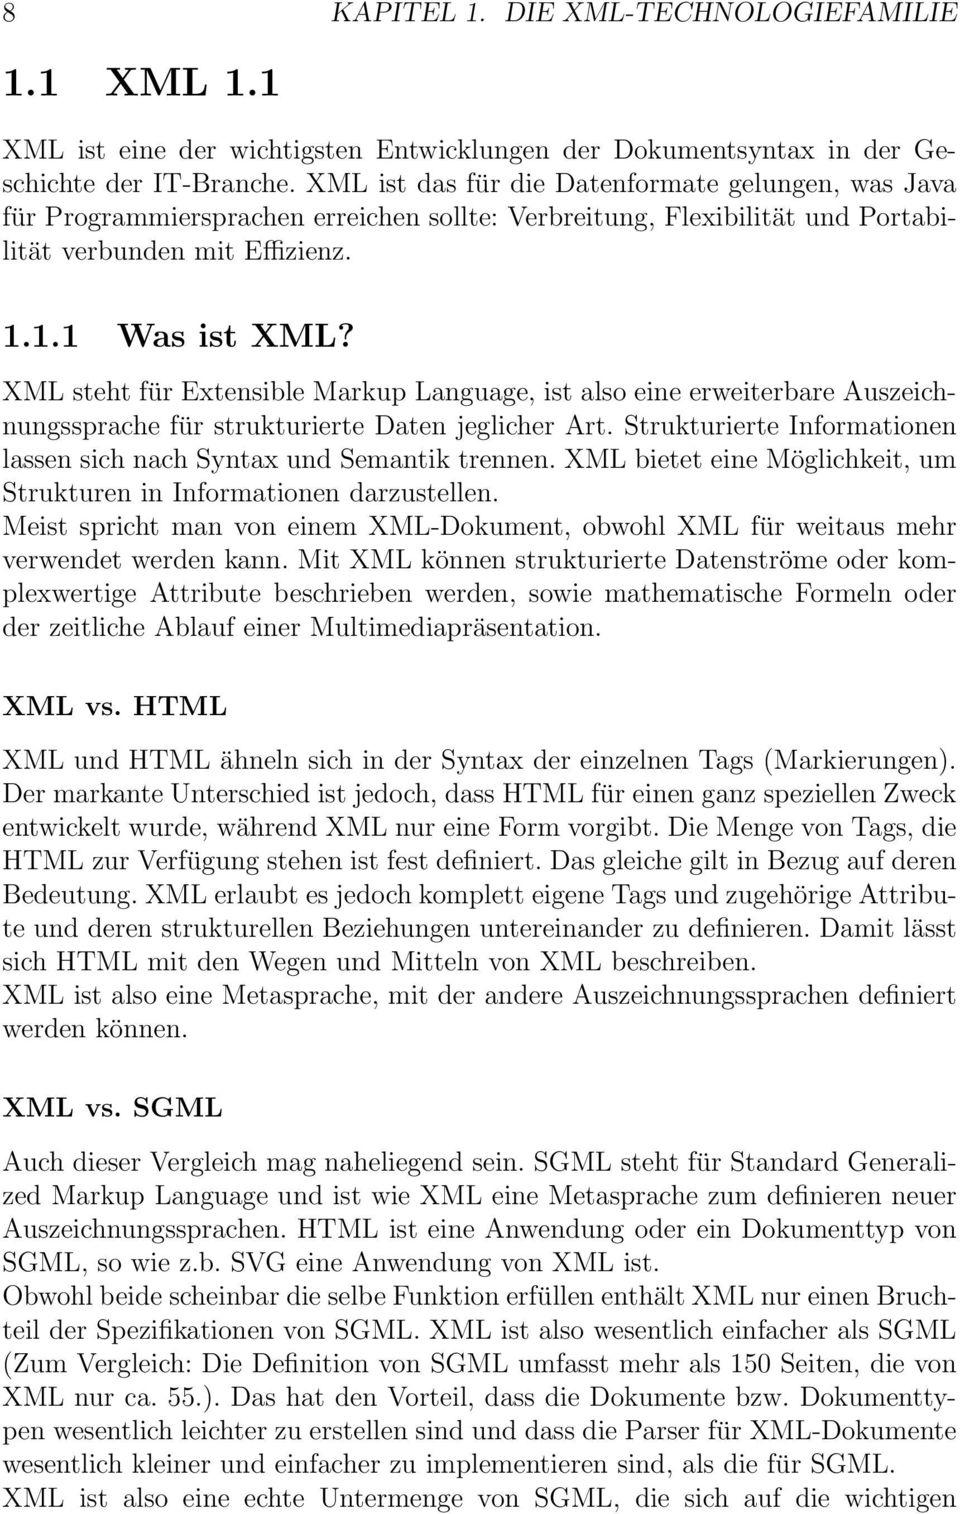 XML steht für Extensible Markup Language, ist also eine erweiterbare Auszeichnungssprache für strukturierte Daten jeglicher Art.